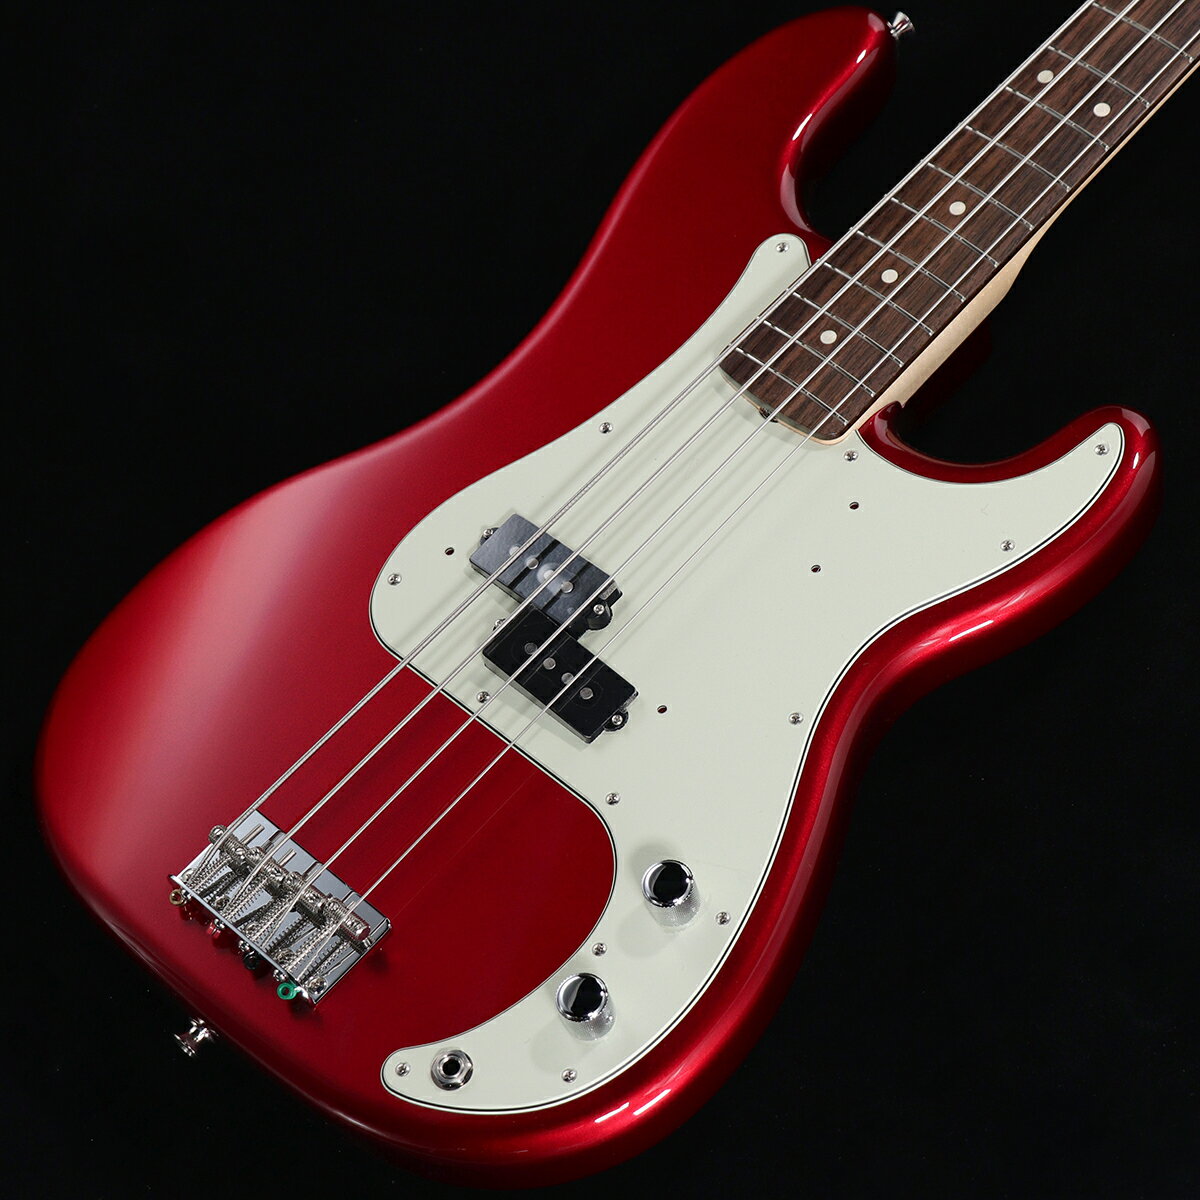 2023年限定モデルCandy Apple RedのHeritage 60s Precision Bass登場！Made in Japan Heritageは、ヴィンテージ楽器がプレイヤーに与える至高の演奏体験を追求したシリーズです。Fender Custom Shopでマスタービルダーとして名を馳せ、ヴィンテージ楽器に対して深い造詣を誇るマーク・ケンドリックの監修を得て採用された、ヴィンテージファンを魅了するスペックを詰め込んでいます。HeritageシリーズのすべてのモデルはUSA製品のプロファイリングデータを元に設計されており、ボディシェイプやネックシェイプも年代に合わせて採用。クロスワイヤーのピックアップやピックアップのセッティングとトーン、ボディのカラーの再現性など、細部に至るまでフェンダーの正統な系譜を受け継いでいます。Made in Japan Heritage 60s Precision Bassはアルダーボディにラッカーフィニッシュを施し、使用年月と共に色合いに深みが増します。20本のヴィンテージスタイルフレットを装備した7.25インチラジアスの“1963 C”シェイプメイプルネック、4つのスレデッドスチールサドル付きヴィンテージスタイルブリッジ、そしてHeritageシリーズのために特別に選定されたピックアップなど、本製品を構成するすべての仕様はクラシックなプレイアビリティと甘いヴィンテージトーンを実現するためにこだわり抜かれています。多くの偉大なミュージシャンを虜にしてきたフェンダーの唯一無二のプレイアビリティと味わい深いトーンが、Heritageシリーズで体験いただけます。■S/N:JD23016930■重量:3.85kg■付属品:ソフトケース、メーカー保証書 製品仕様 Body MaterialAlderBody FinishGloss LacquerNeckMaple, 1963 “C”Neck FinishGloss Lacquer &#40;309&#41;, Nitrocellulose Lacquer Over Urethane Finish &#40;300&#41;FingerboardRosewood, 7.25” &#40;184.1 mm&#41;Frets20, VintagePosition InlaysClay Dot &#40;Rosewood&#41;Nut &#40;Material/Width&#41;Bone, 1.650” &#40;42 mm&#41;Tuning MachinesPure Vintage Reverse Open-GearScale Length34” &#40;86.36 cm&#41;Bridge4-Saddle Vintage-Style with Threaded Steel SaddlesPickguard3-Ply Mint Green &#40;309&#41;, 4-Ply Tortoiseshell &#40;300&#41;PickupsPremium Vintage-Style 60s Single-Coil P Bass &#40;Middle&#41;Pickup SwitchingNoneControlsMaster Volume, Master ToneControl KnobsKnurled Flat-TopHardware FinishNickel/ChromeStringsNickel Plated Steel &#40;.045-.105 Gauges&#41;Case/Gig BagDeluxe Gig Bag